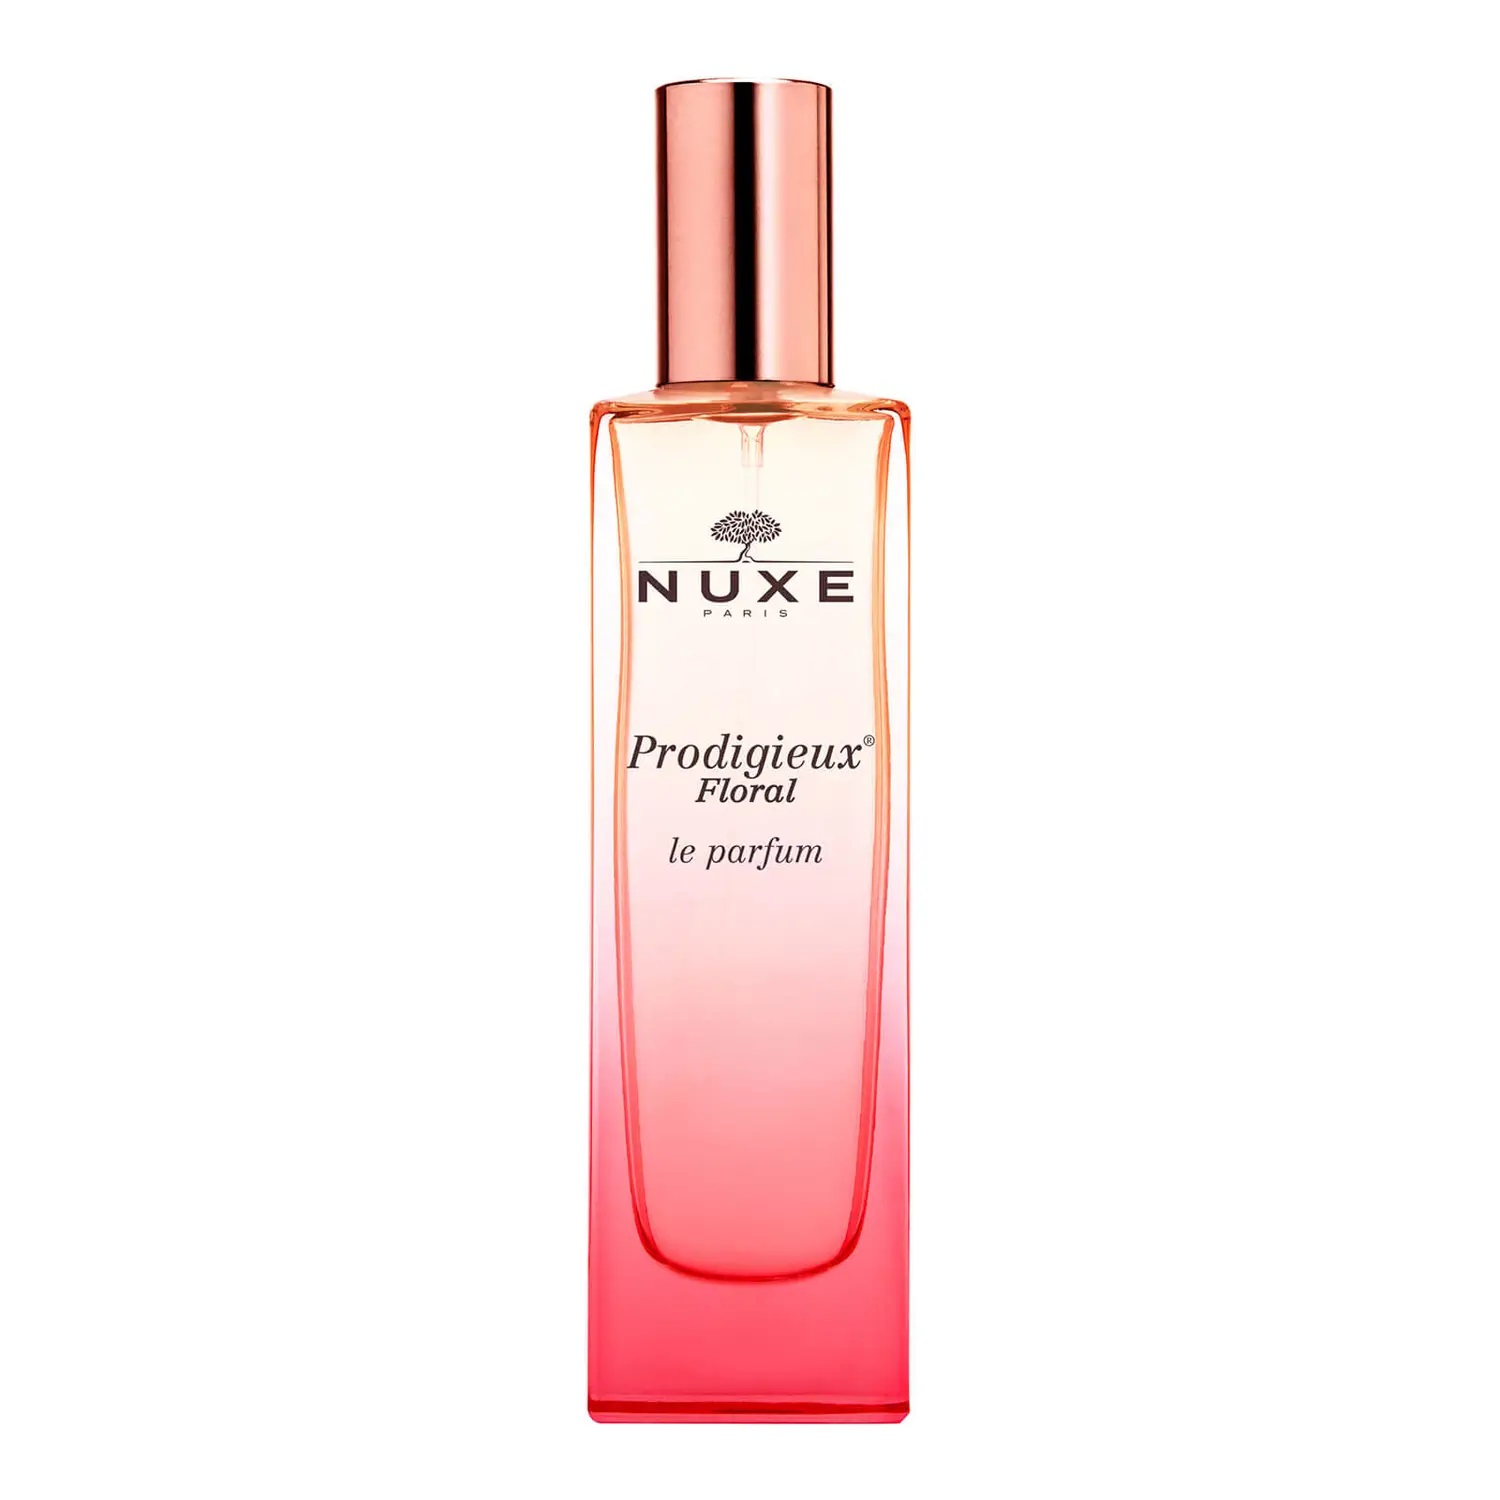 Nuxe Parfémovaná voda Prodigieux Floral (Le Parfum) 50 ml